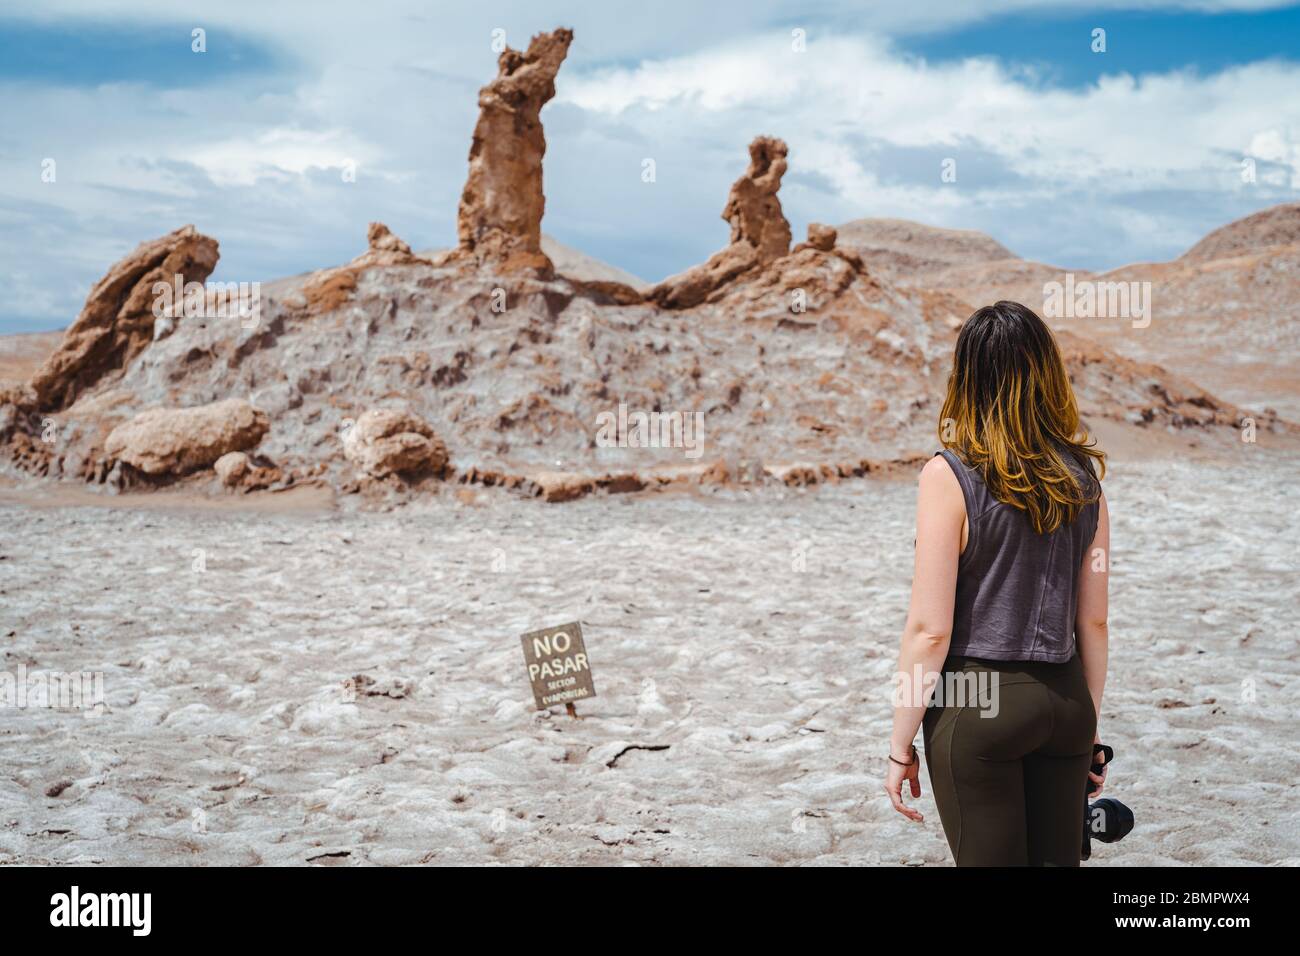 Weibliche Reisende auf Naturdenkmal drei Marias (Spanisch: Las Tres Marias) Felsformation am Mond-Tal in der Atacama-Wüste, Chile. Stockfoto